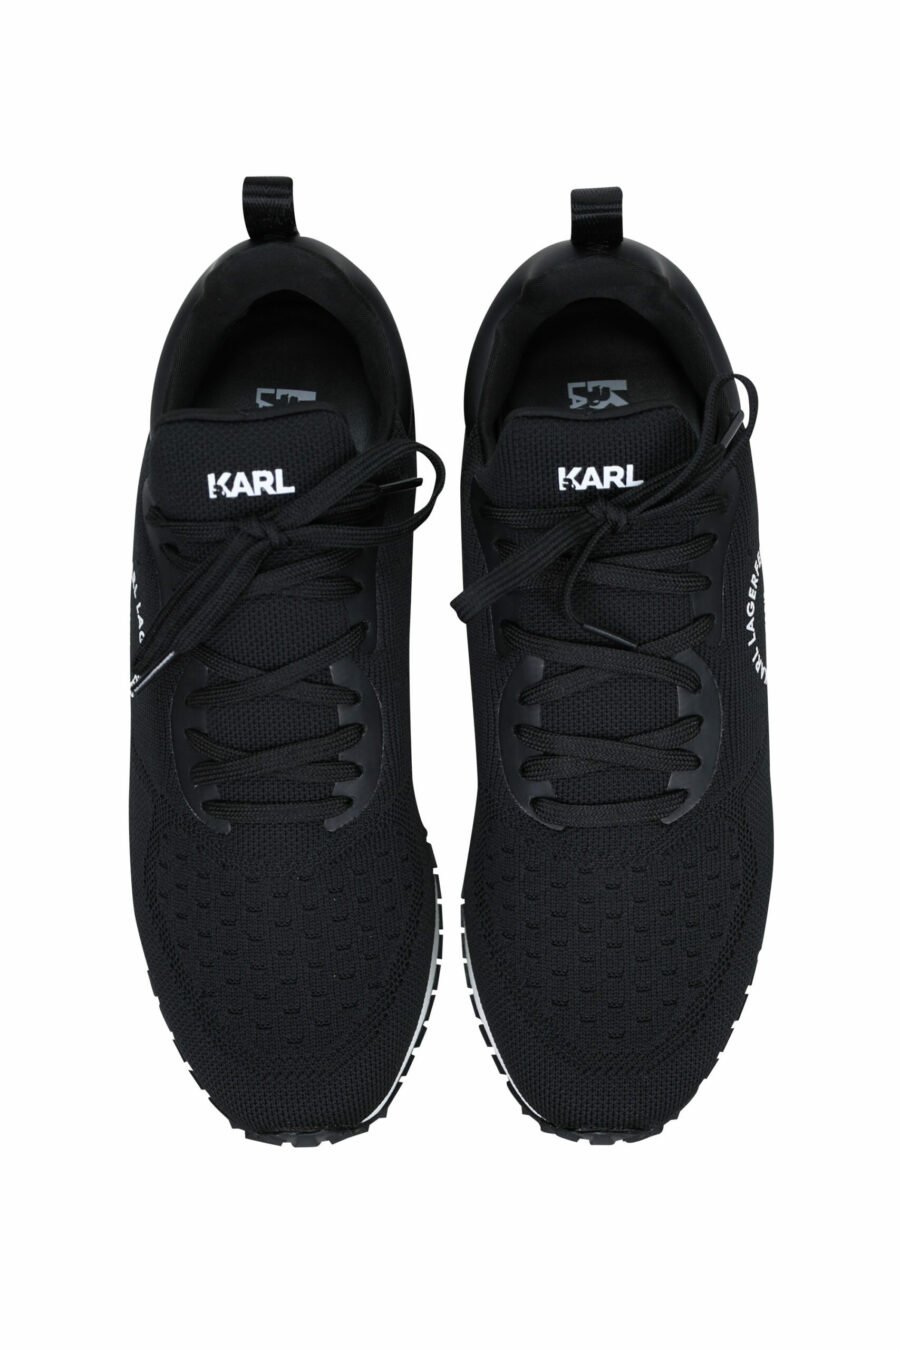 Schwarze "velocitor" Schuhe mit weißem "rue st guillaume" Logo - 5059529326370 4 skaliert